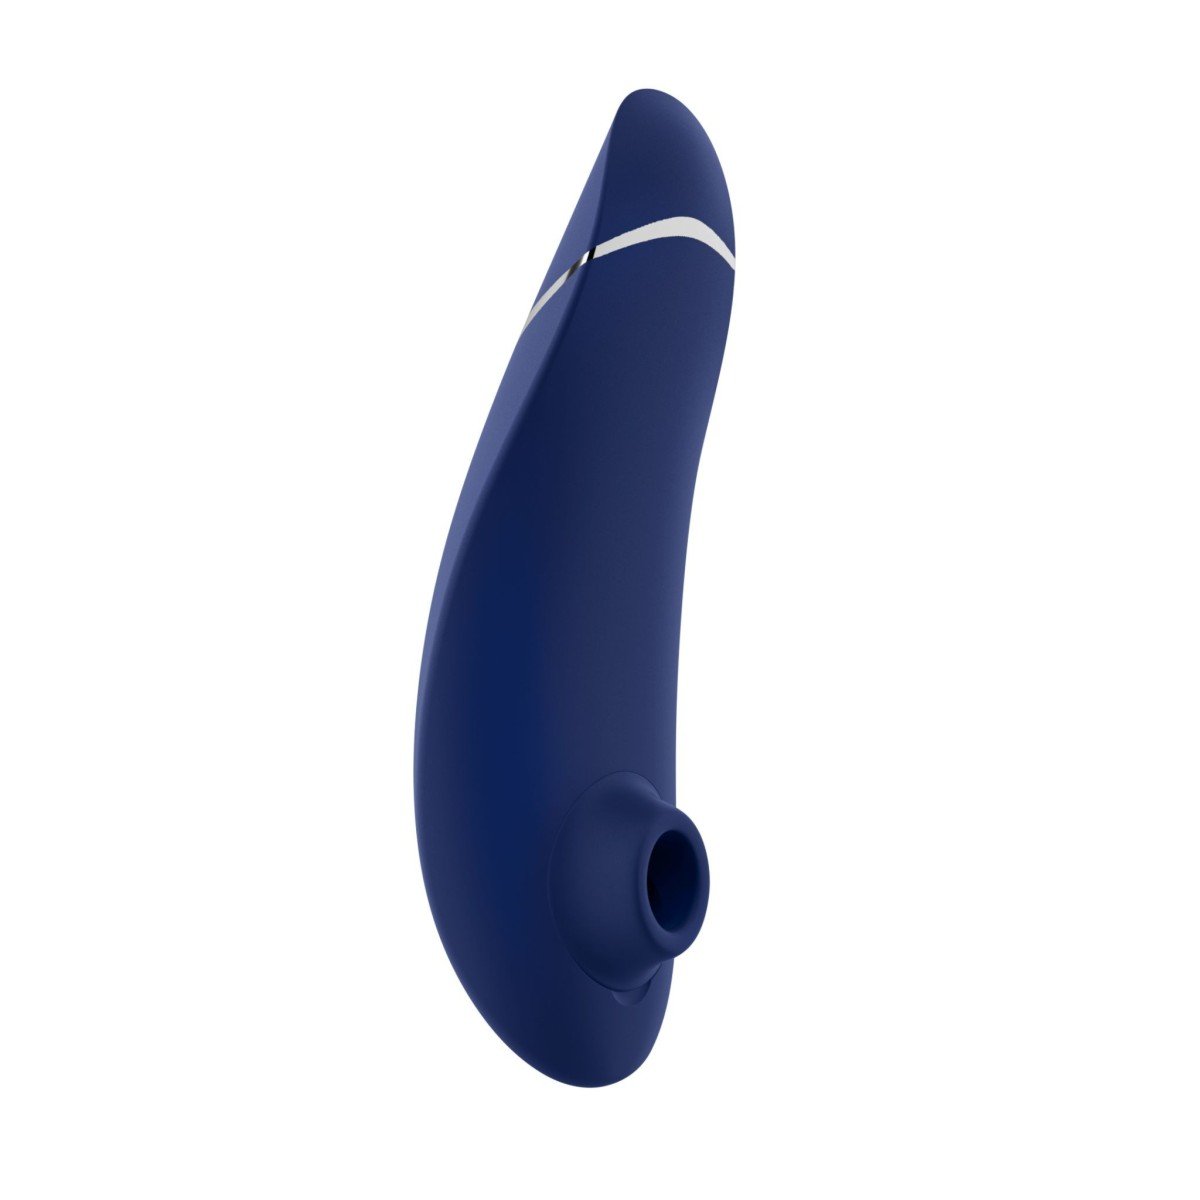 Stimulátor klitorisu Womanizer Premium 2 modrý, luxusní bezdotykový stimulátor klitorisu